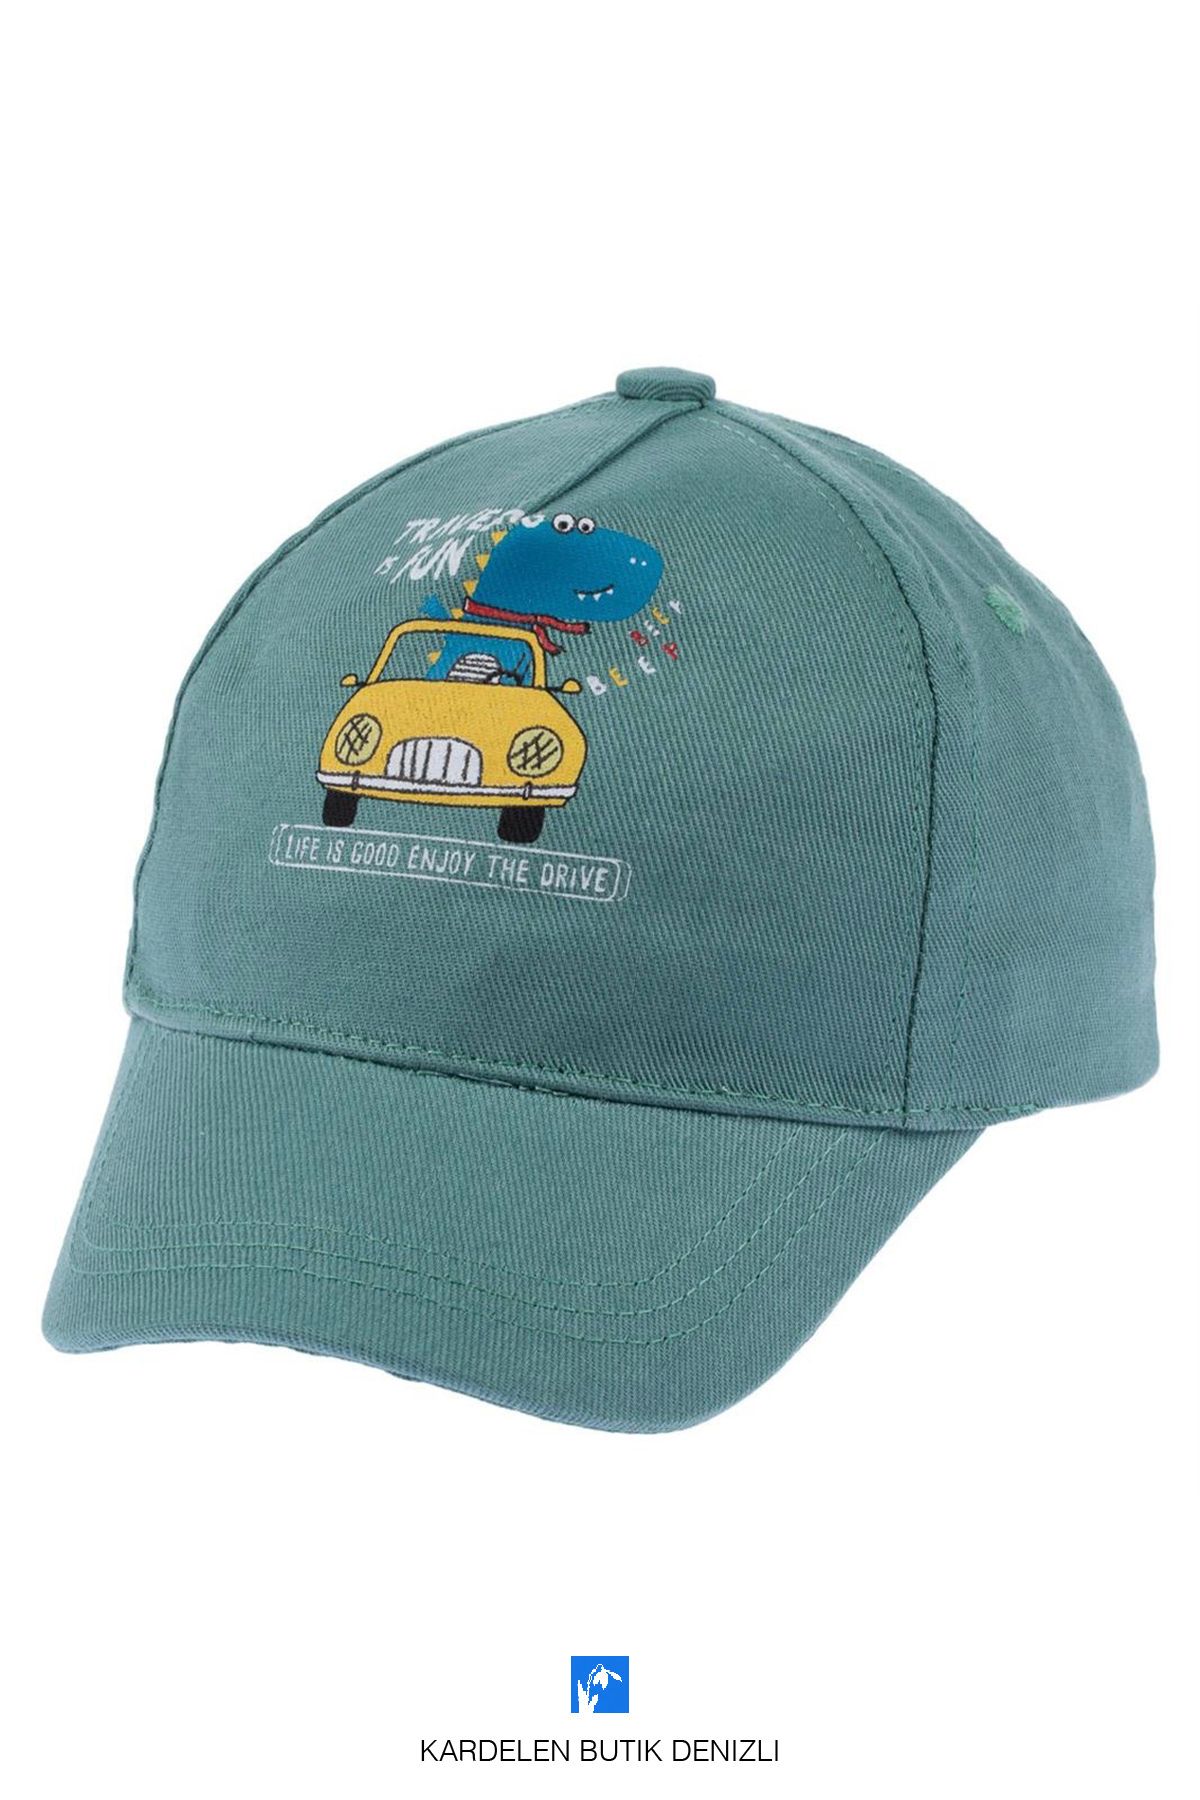 Kardelen Butik Denizli %100 Pamuk Erkek Çocuk İçin Güneş Şapkası  ( 1-3 Yaş ) ( Size 48-50 )